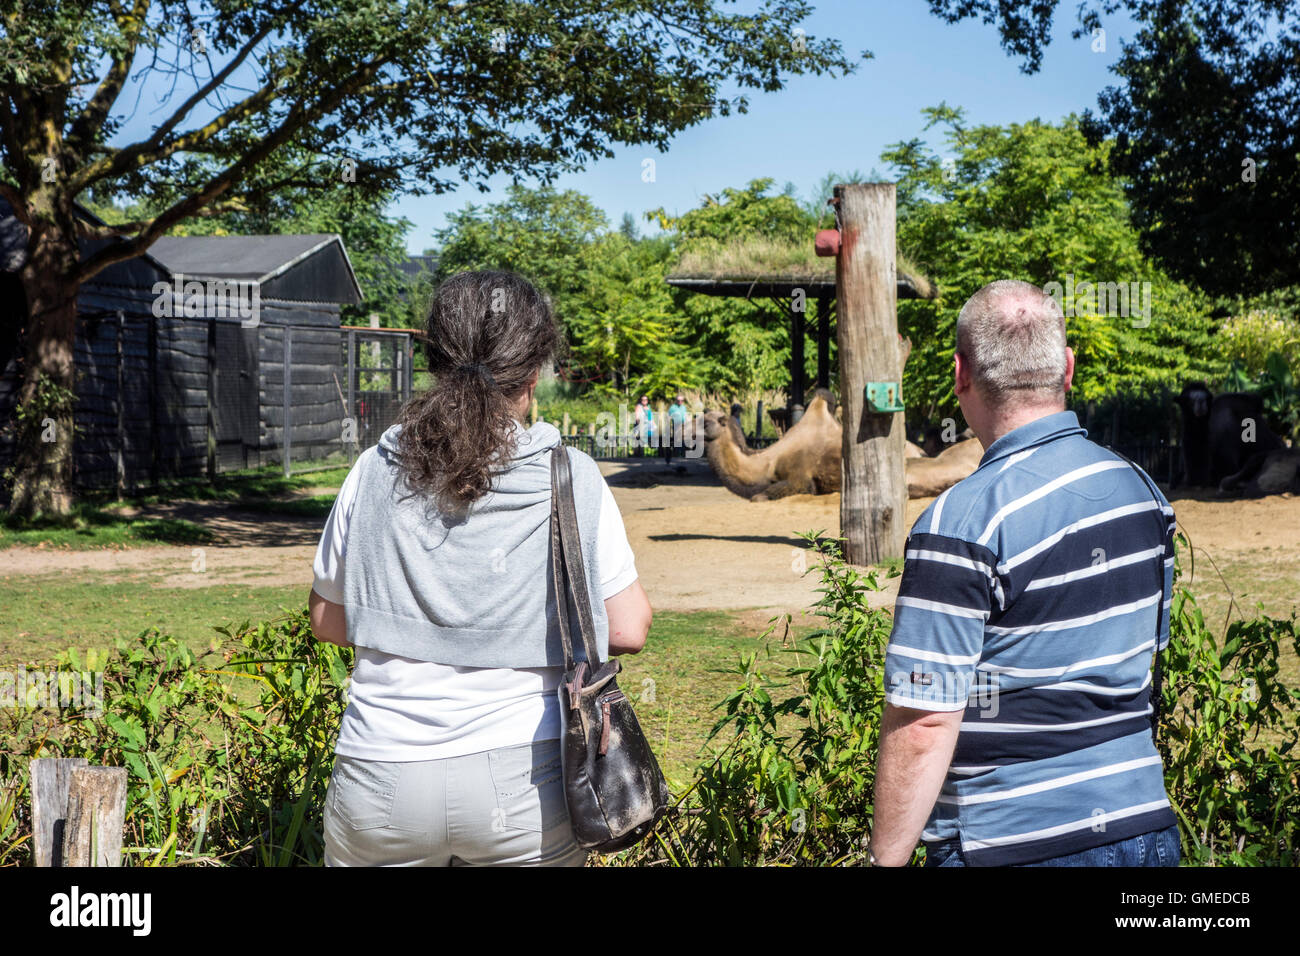 Les visiteurs à la recherche de chameaux dans le boîtier de chameau au zoo de Planckendael, Belgique Banque D'Images